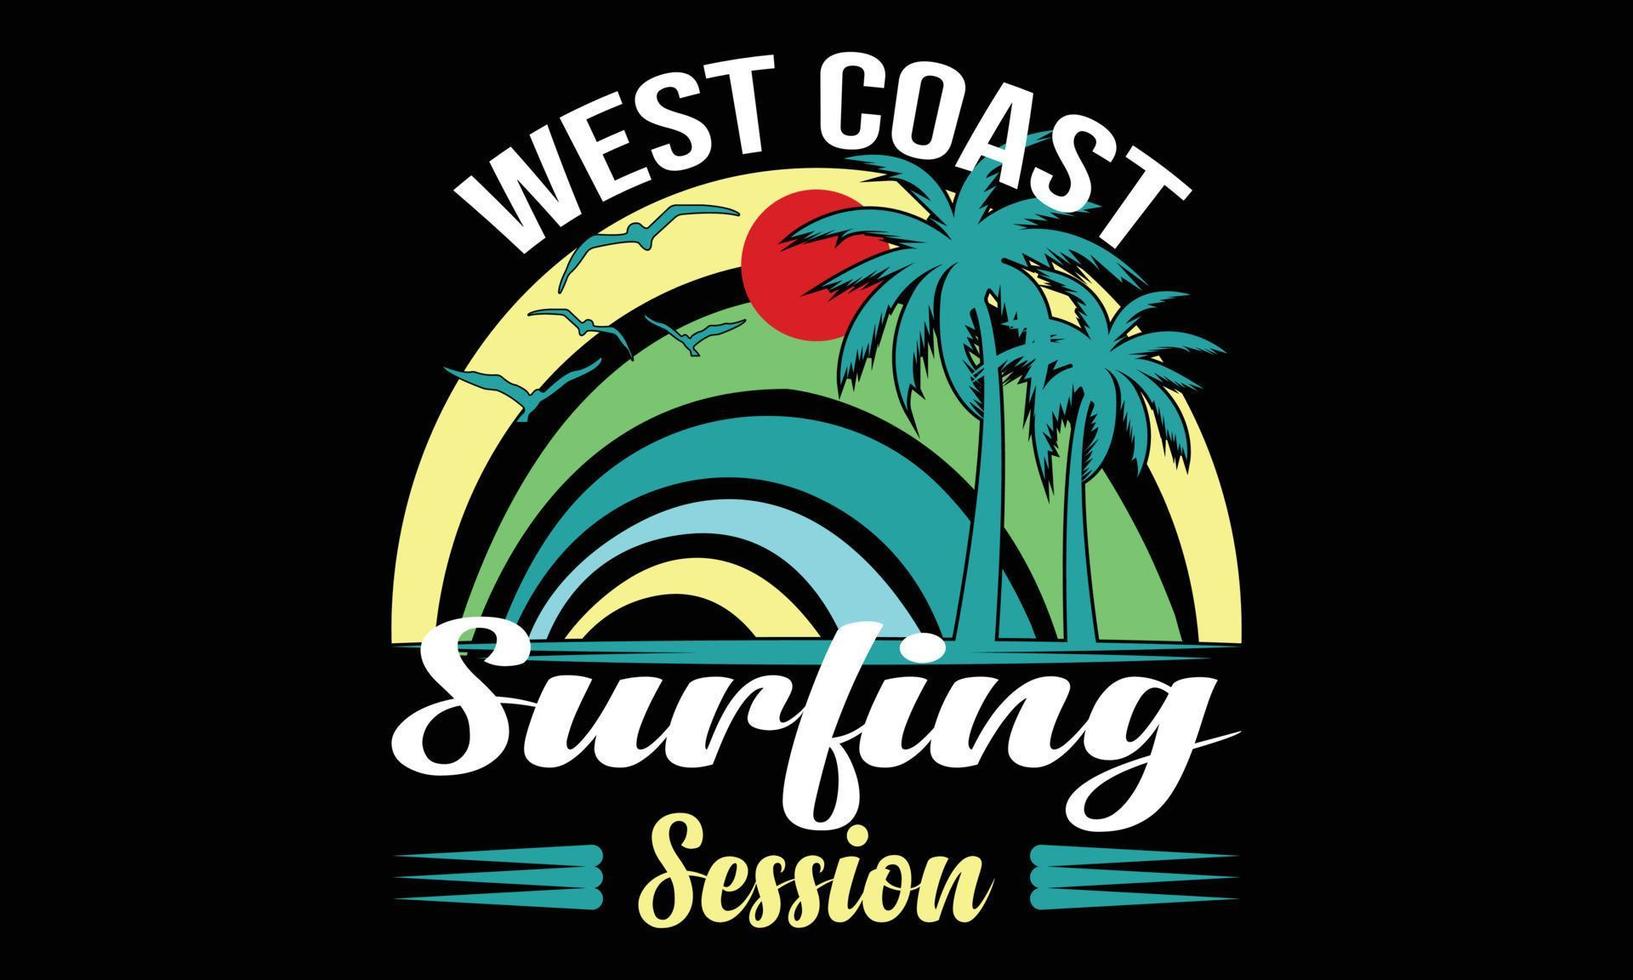 Ilustración de vector de tipografía de sesión de surf de la costa oeste y diseño colorido.